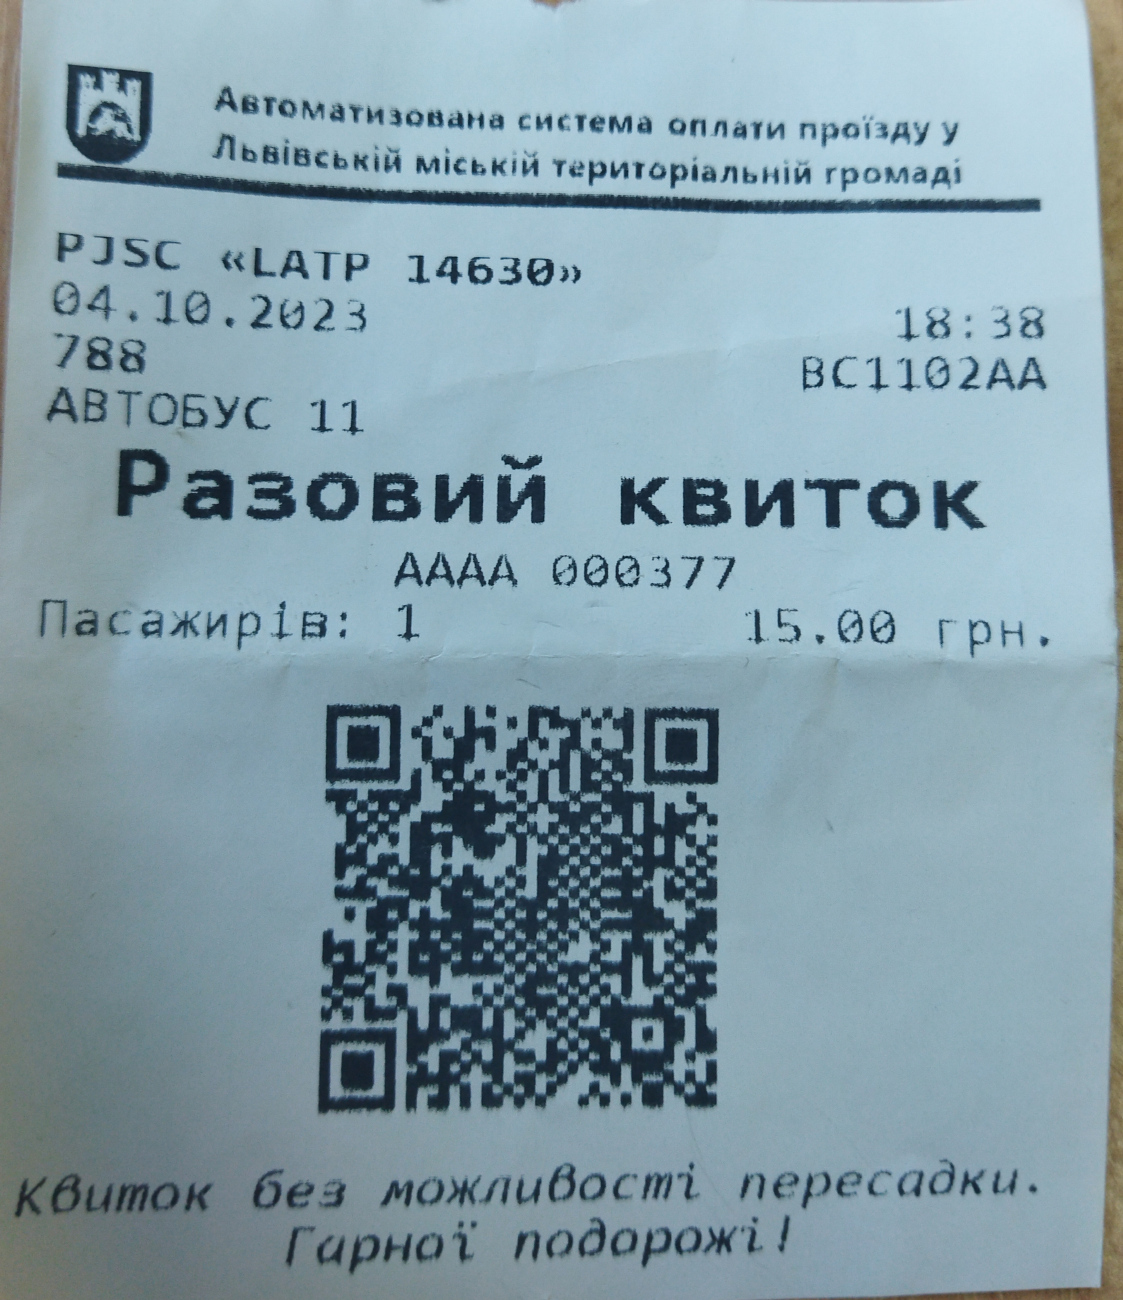 Lvov — Tickets; Tickets (all)